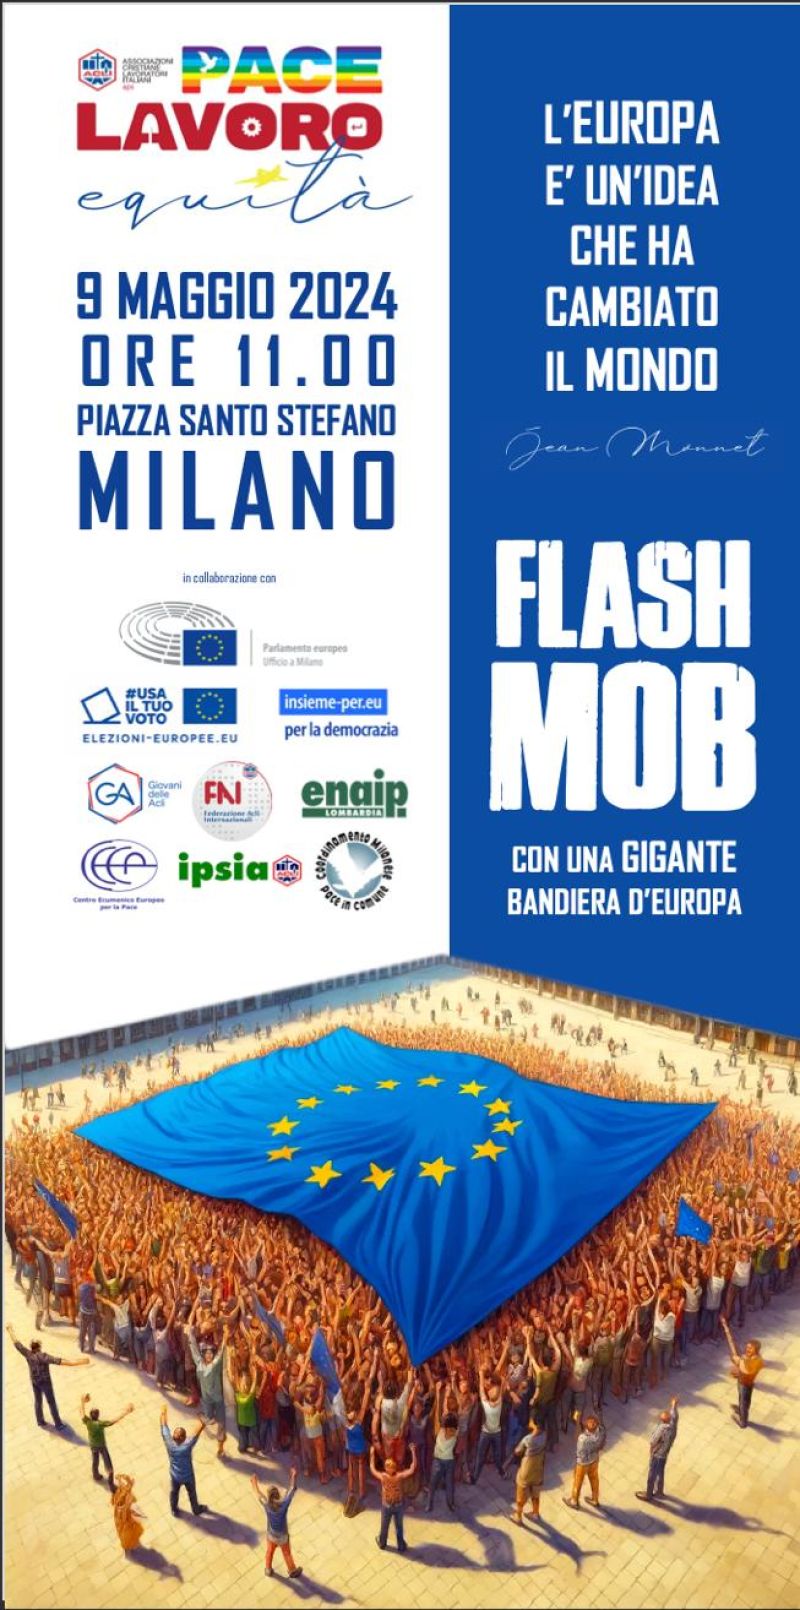 Flash Mob con una gigante bandiera dell'Unione Europea - Acli Lombardia, Acli Milanesi, Giovani delle Acli e Ipsia Acli